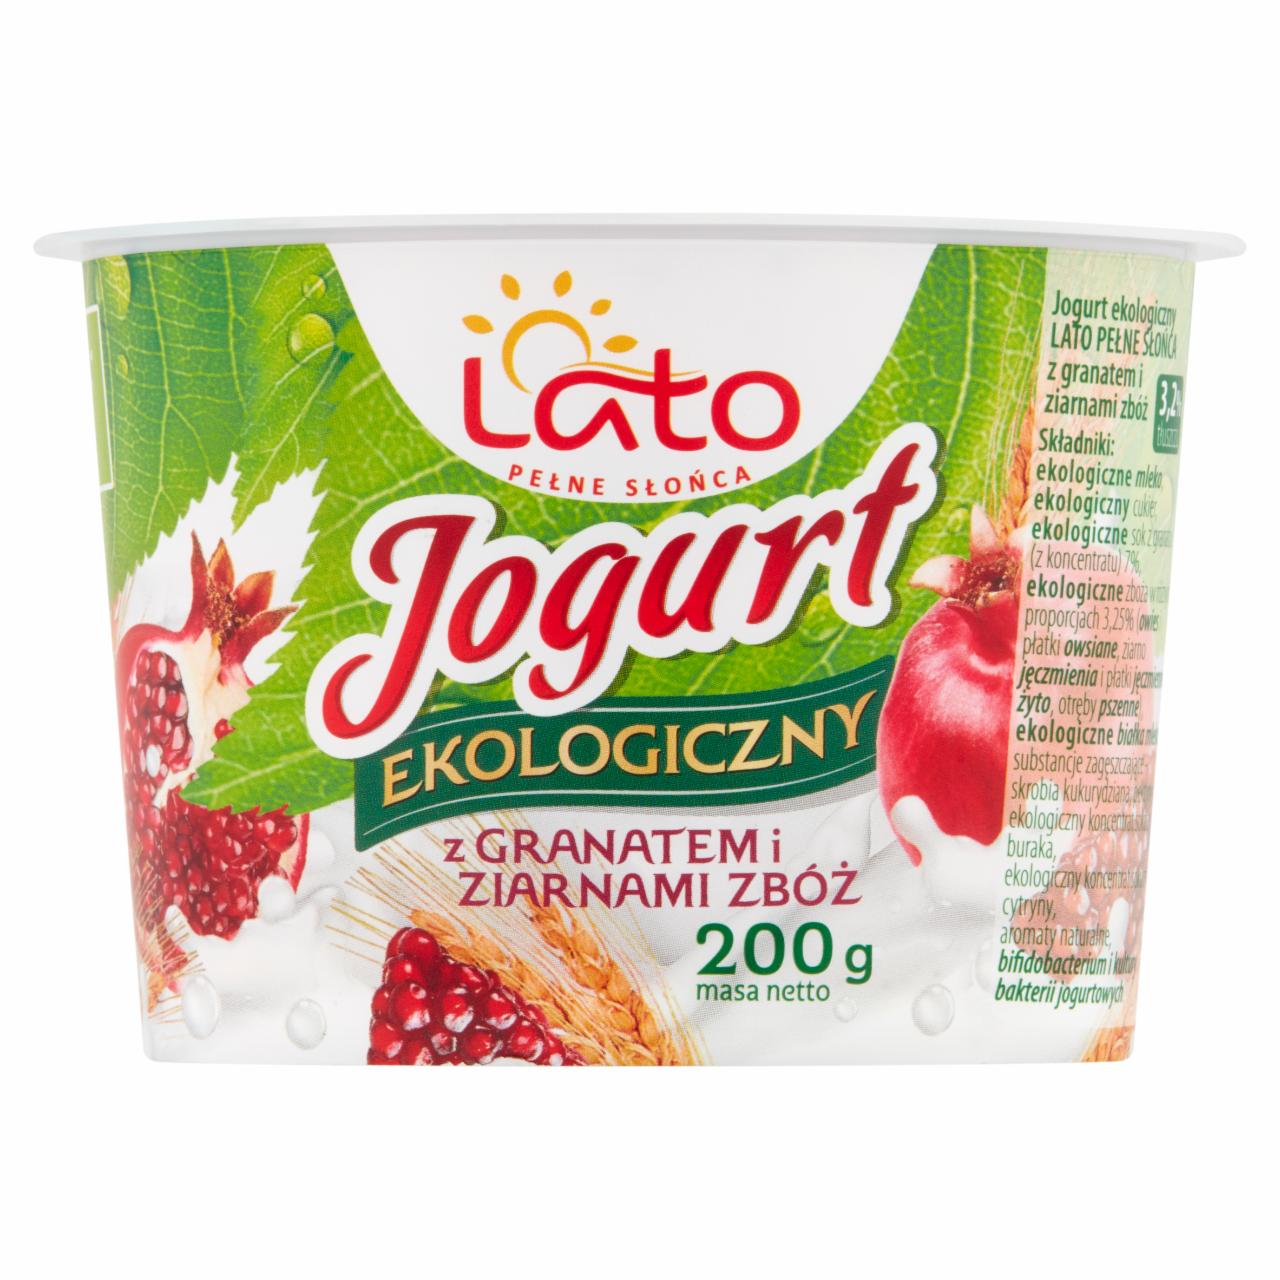 Zdjęcia - Lato pełne słońca Jogurt ekologiczny z granatem i ziarnami zbóż 200 g